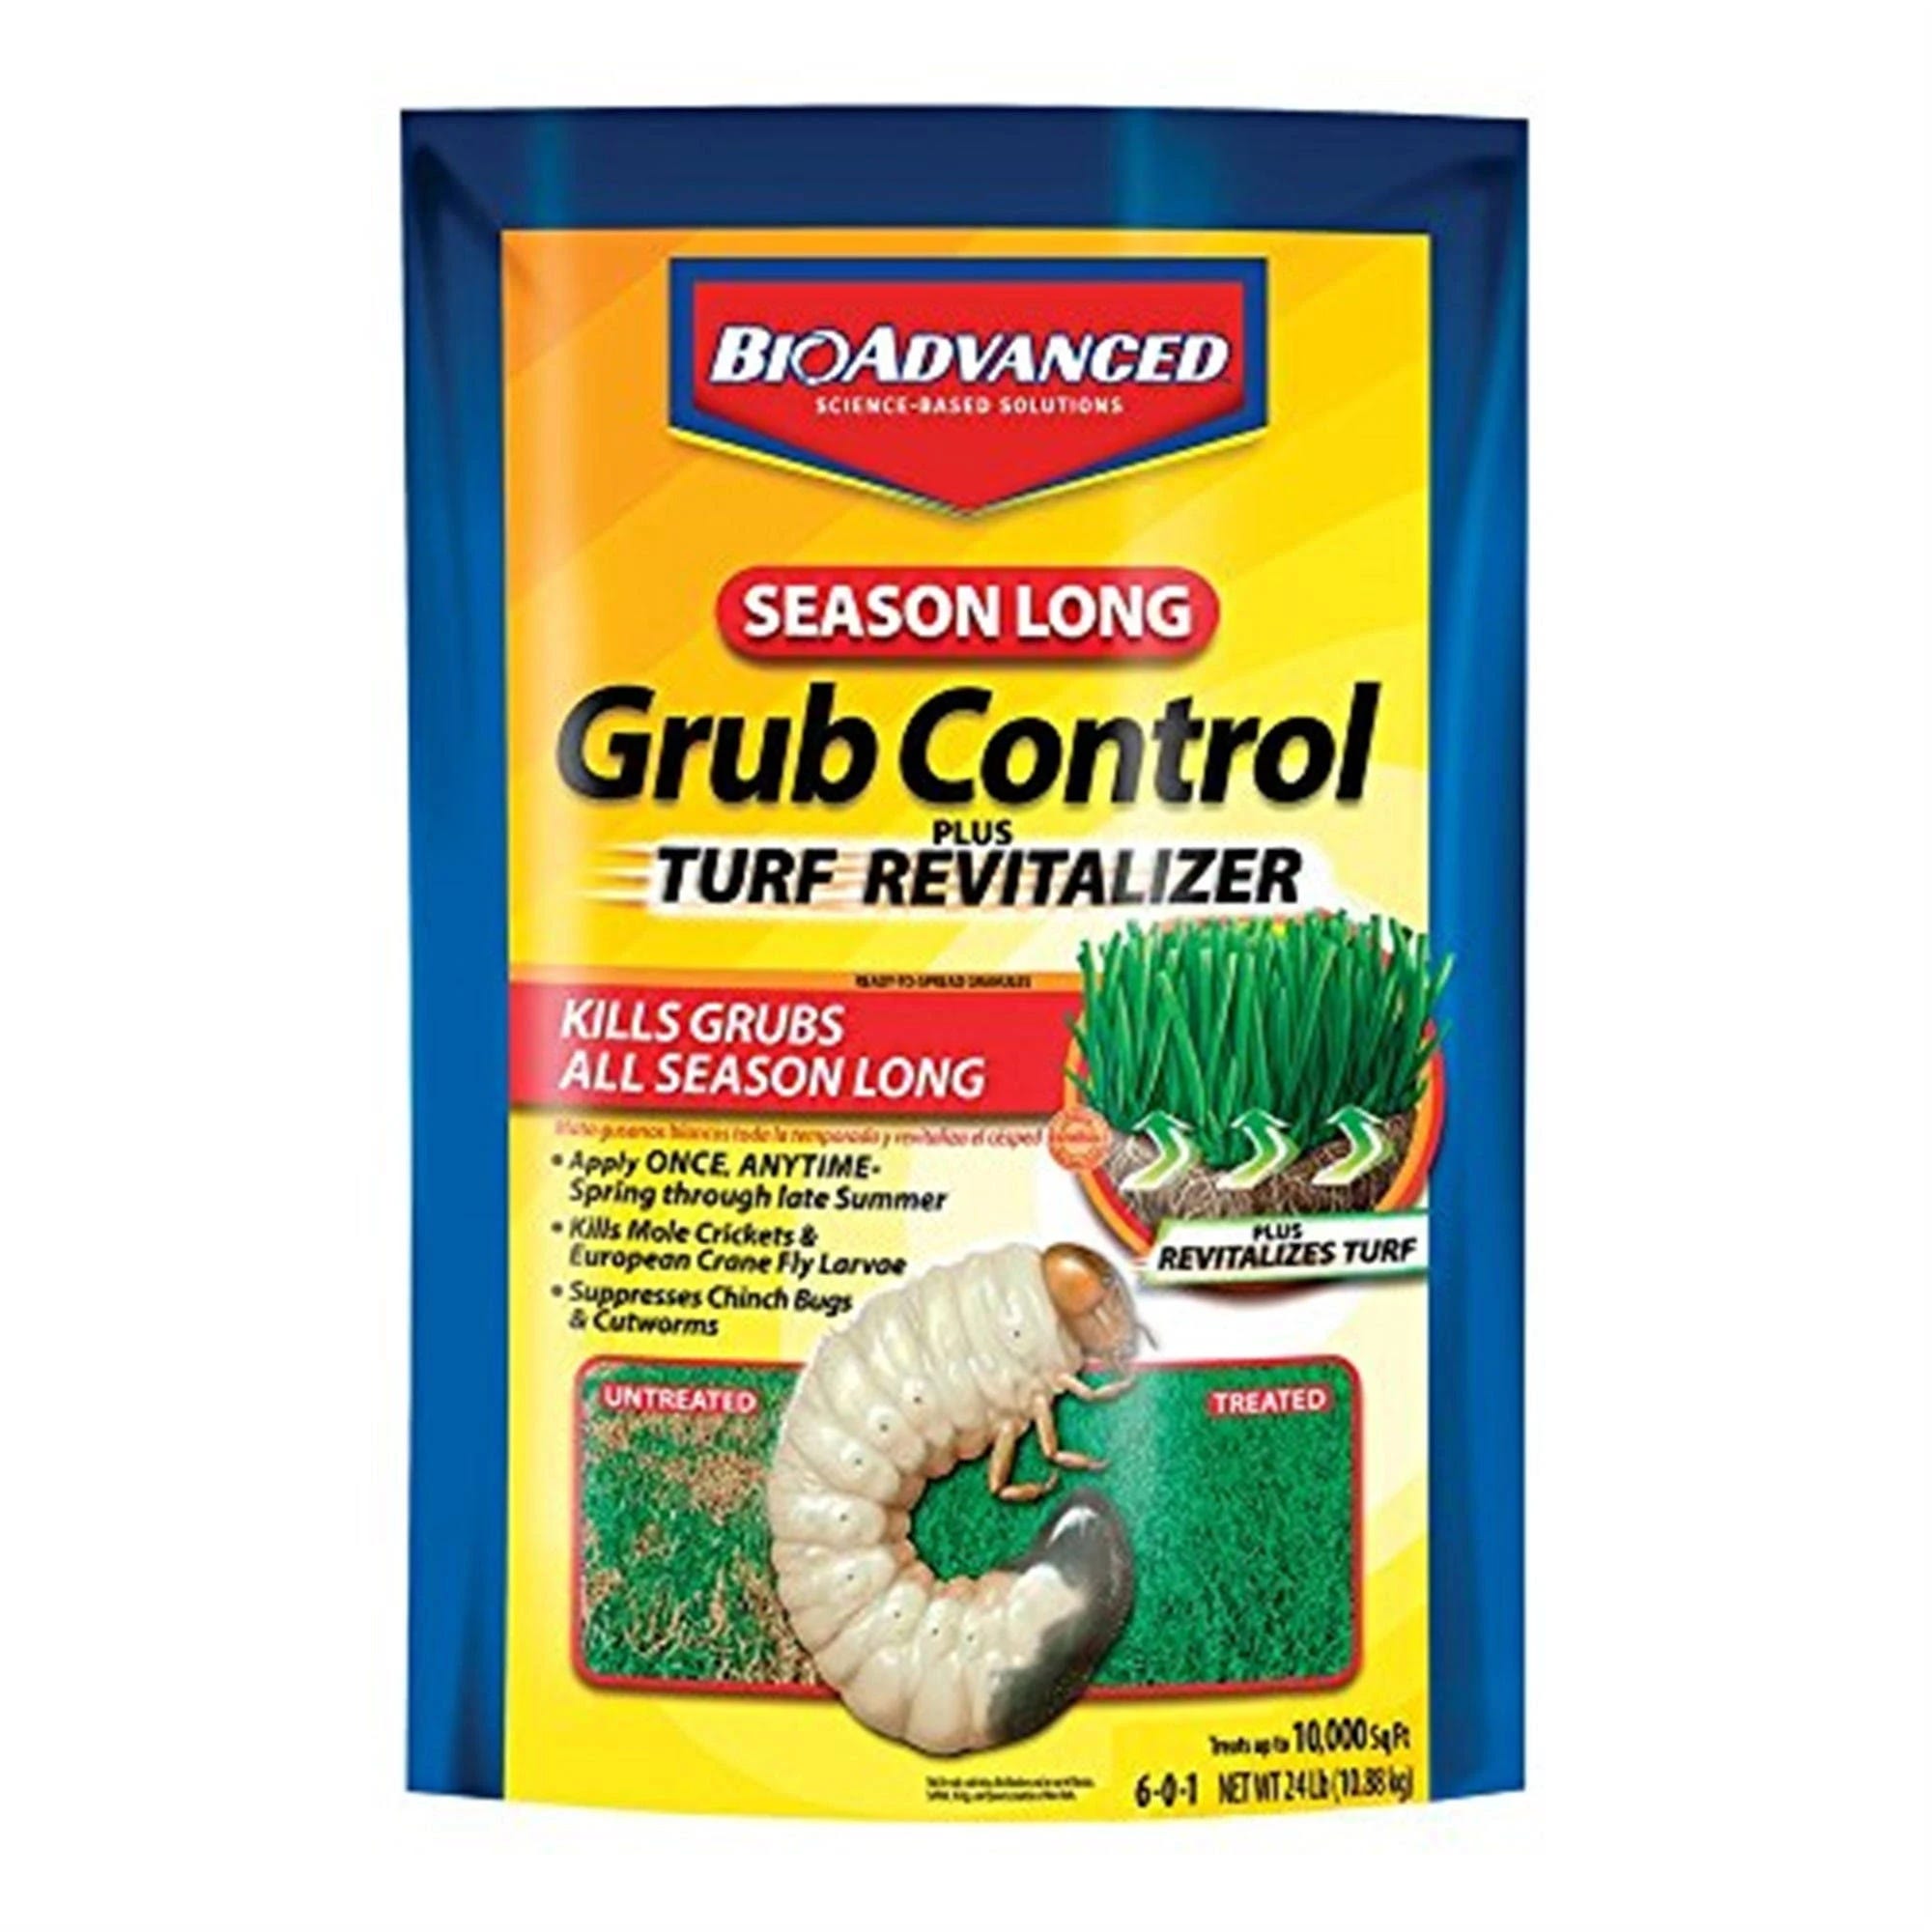 Season-Long Protective Grub Control for Thick Turf | Image